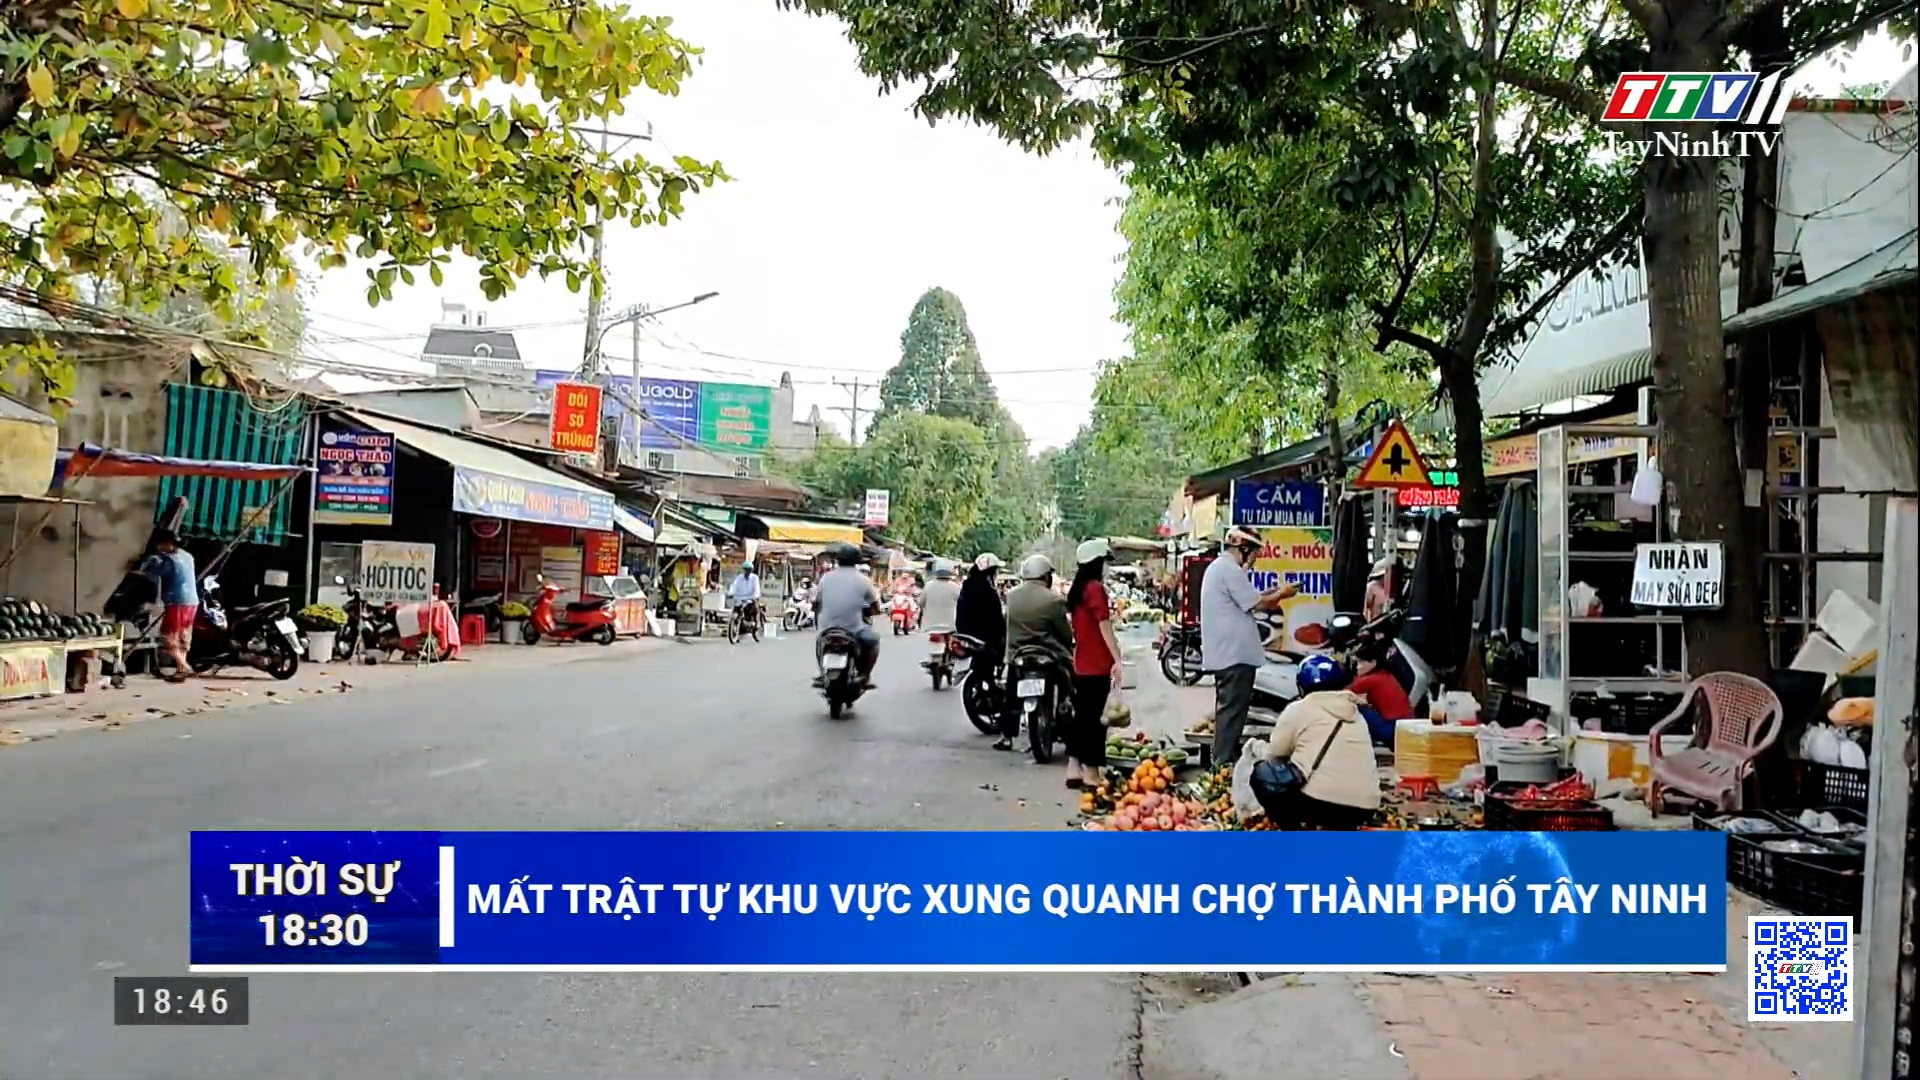 Mất trật tự khu vực xung quanh chợ thành phố Tây Ninh | TayNinhTV